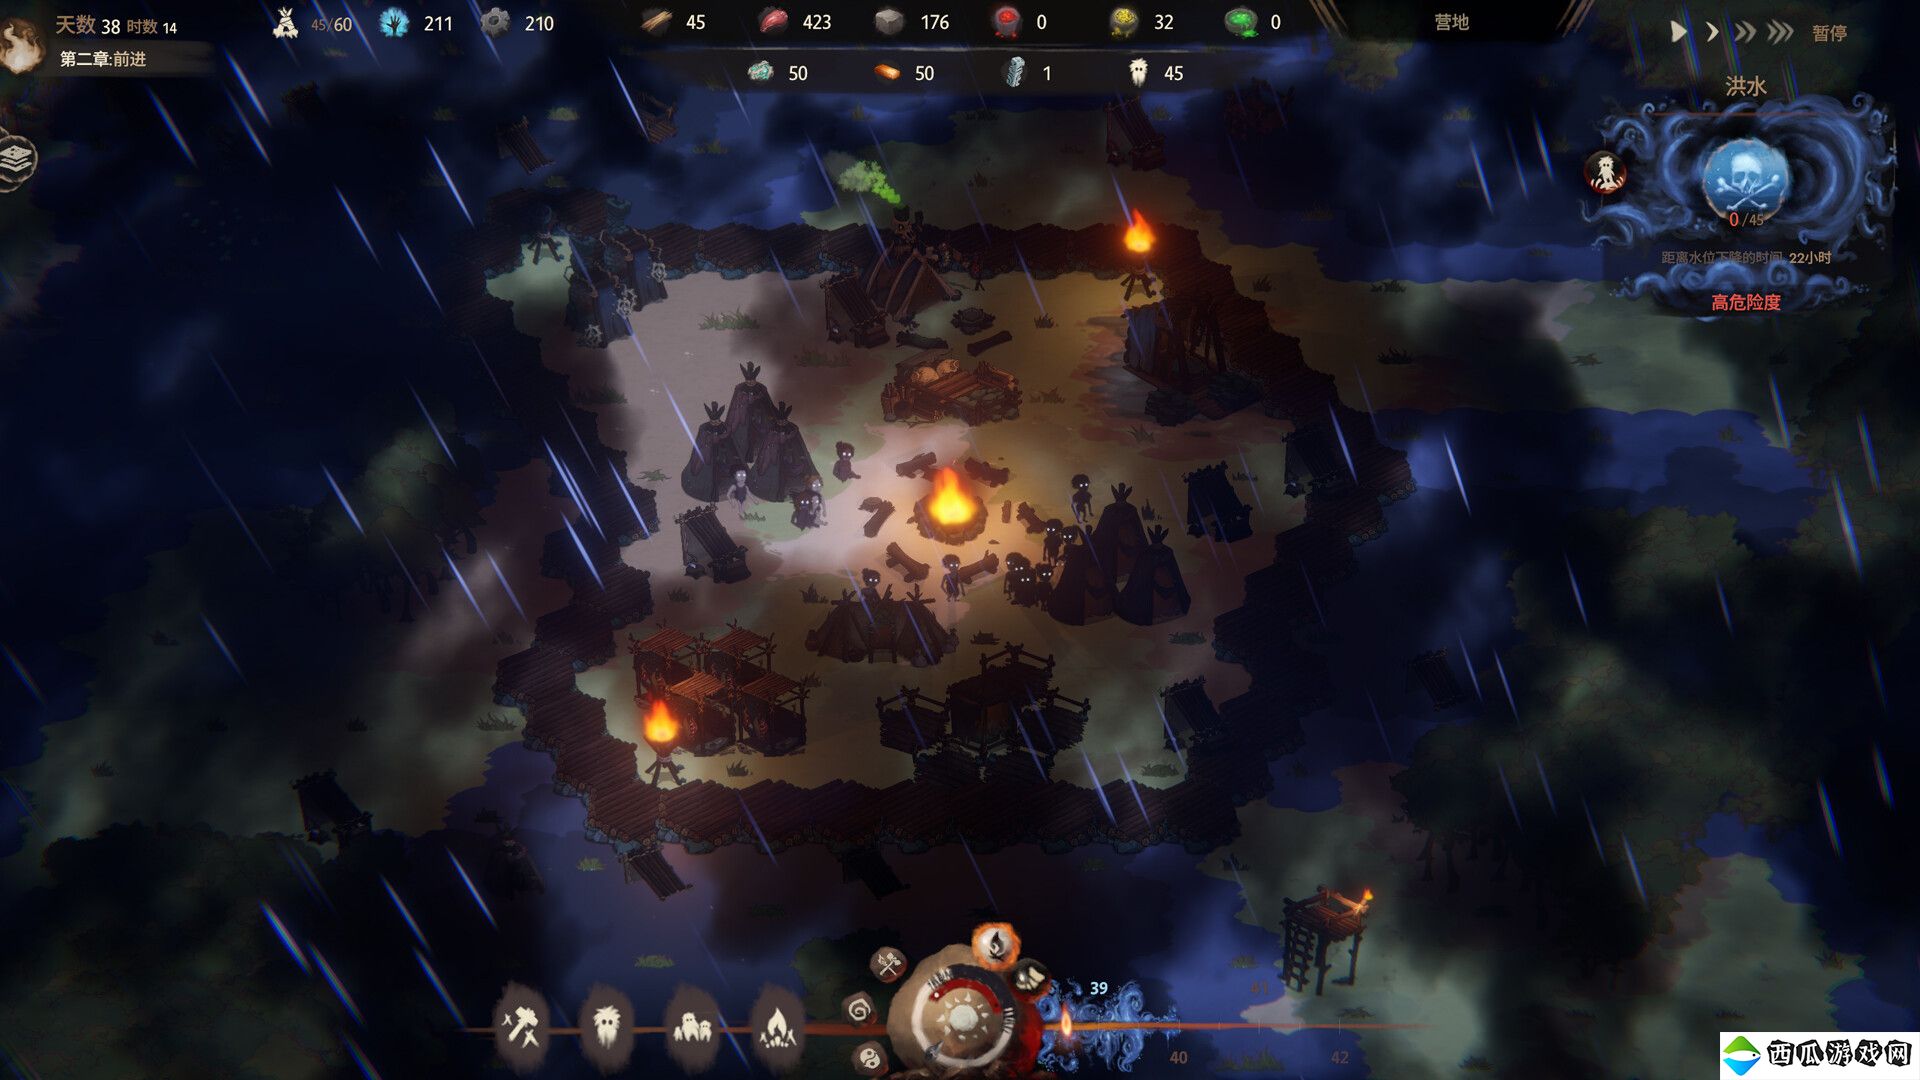 克系生存建造游戏《末夜部落》现已在Steam平台正式推出 获多半好评